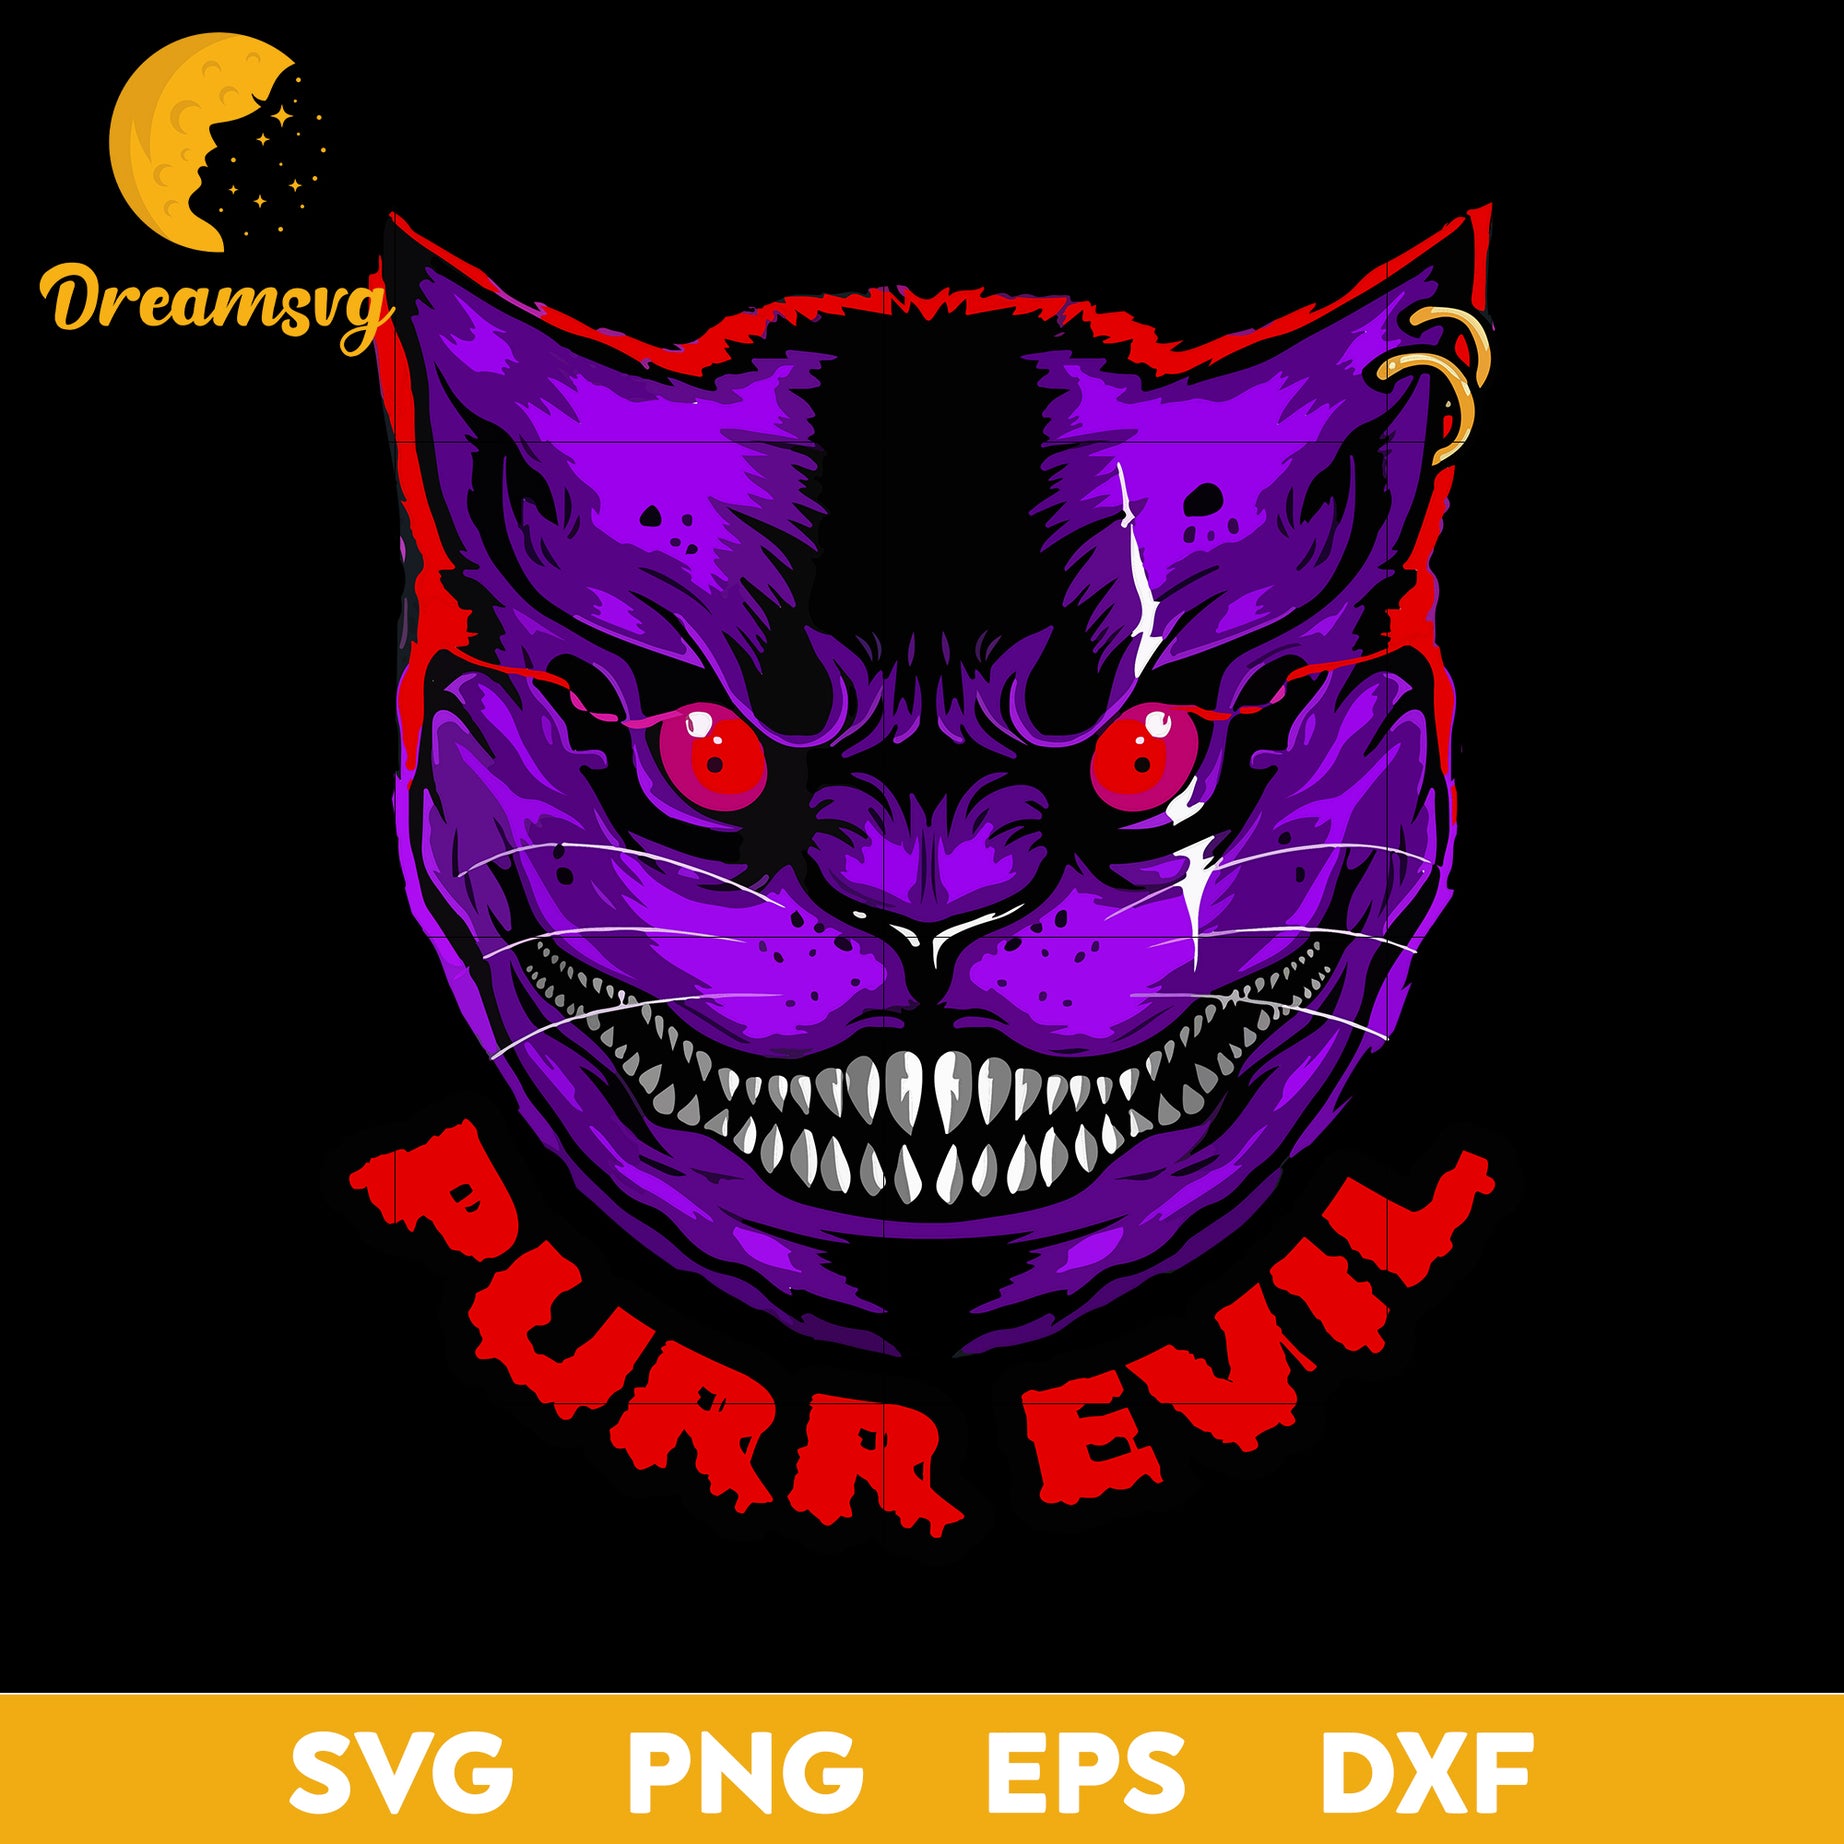 Purr evil svg, Halloween svg, png, dxf, eps digital file.